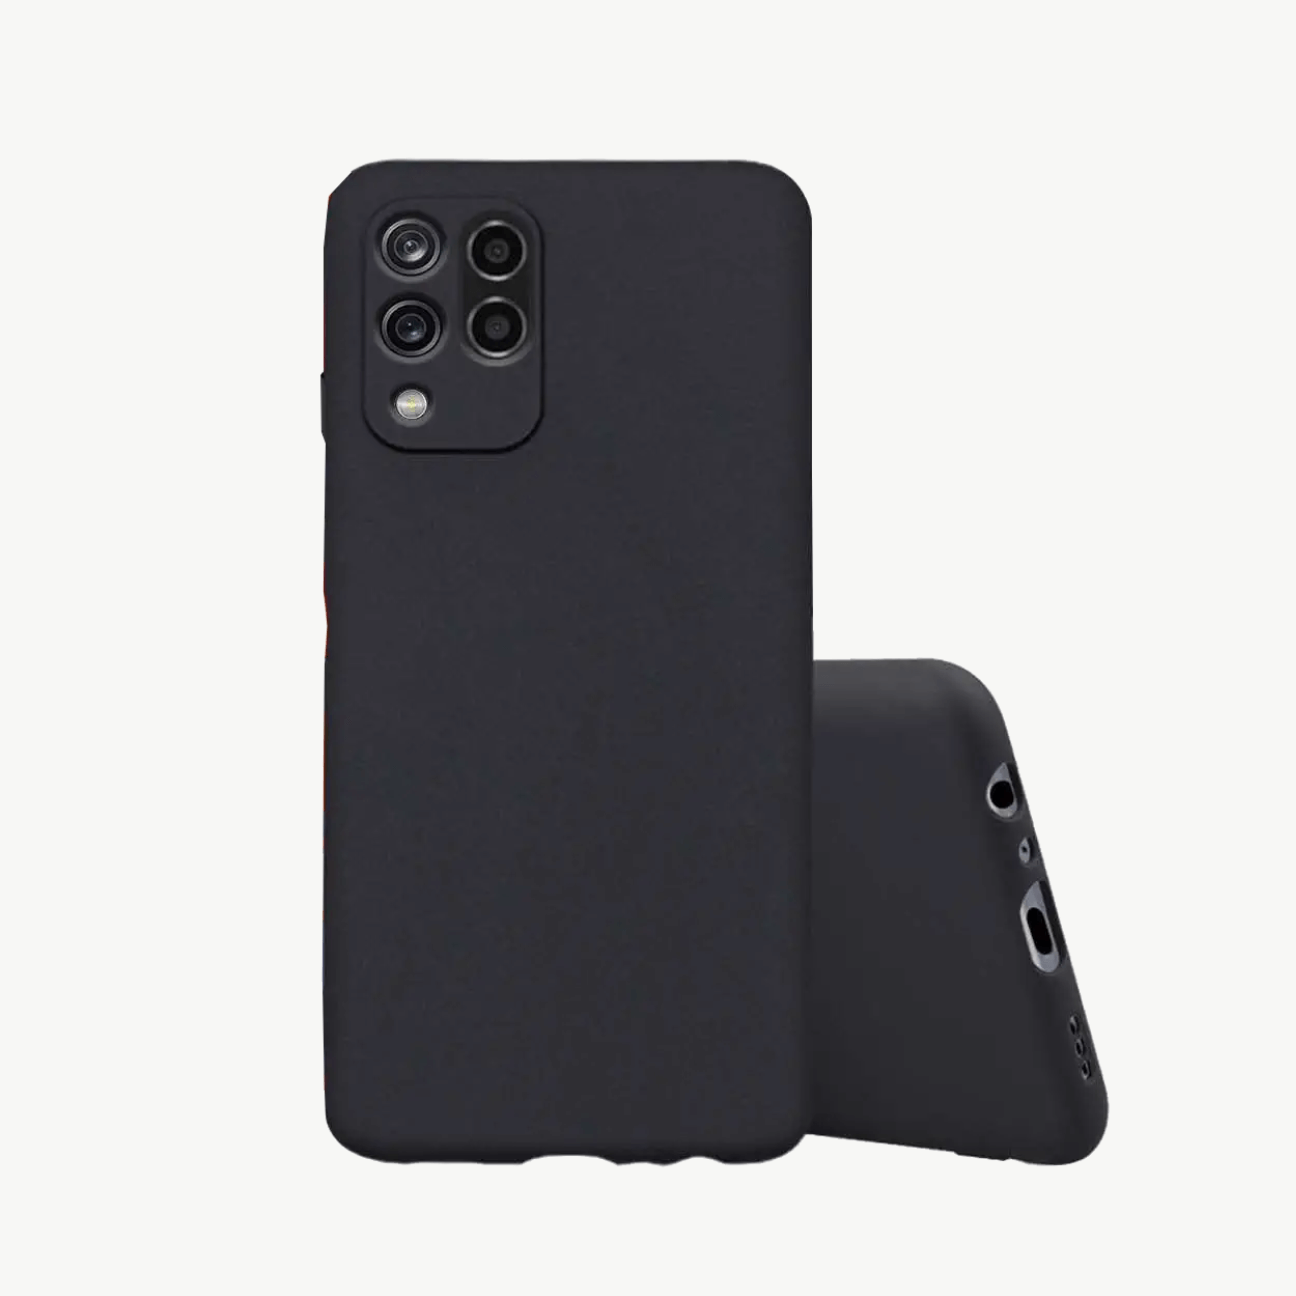 Realme Narzo 20 Pro (2020) Black Soft Silicone Phone Case Image